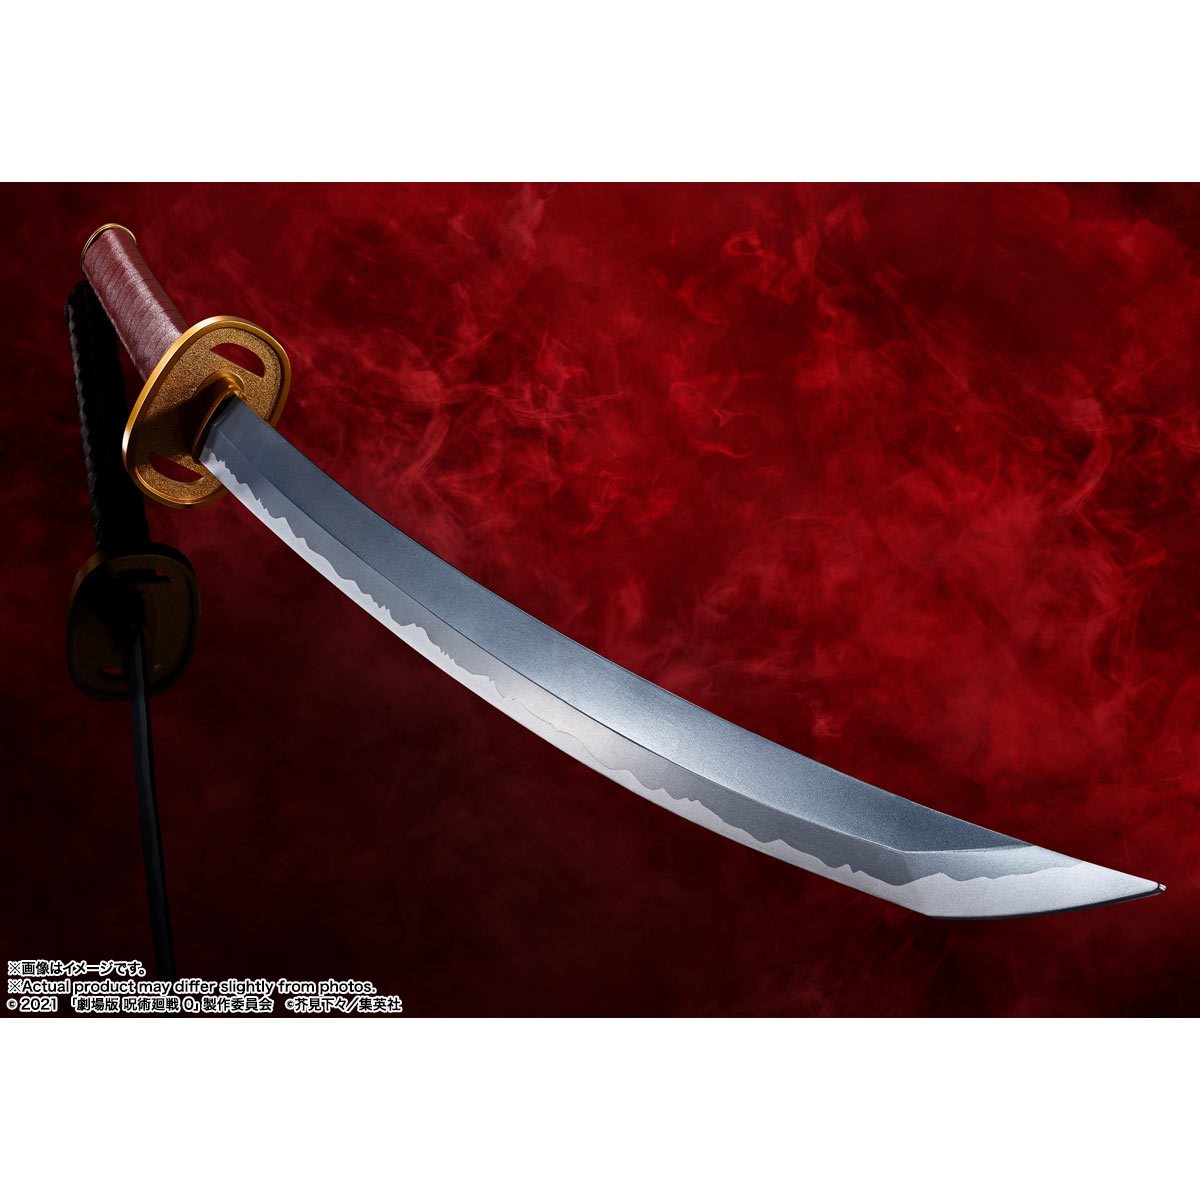 Bandai Tamashii Nations Proplica: Jujutsu Kaisen 0 The Movie - Espada de Yuta Okkotsus Prop Replica